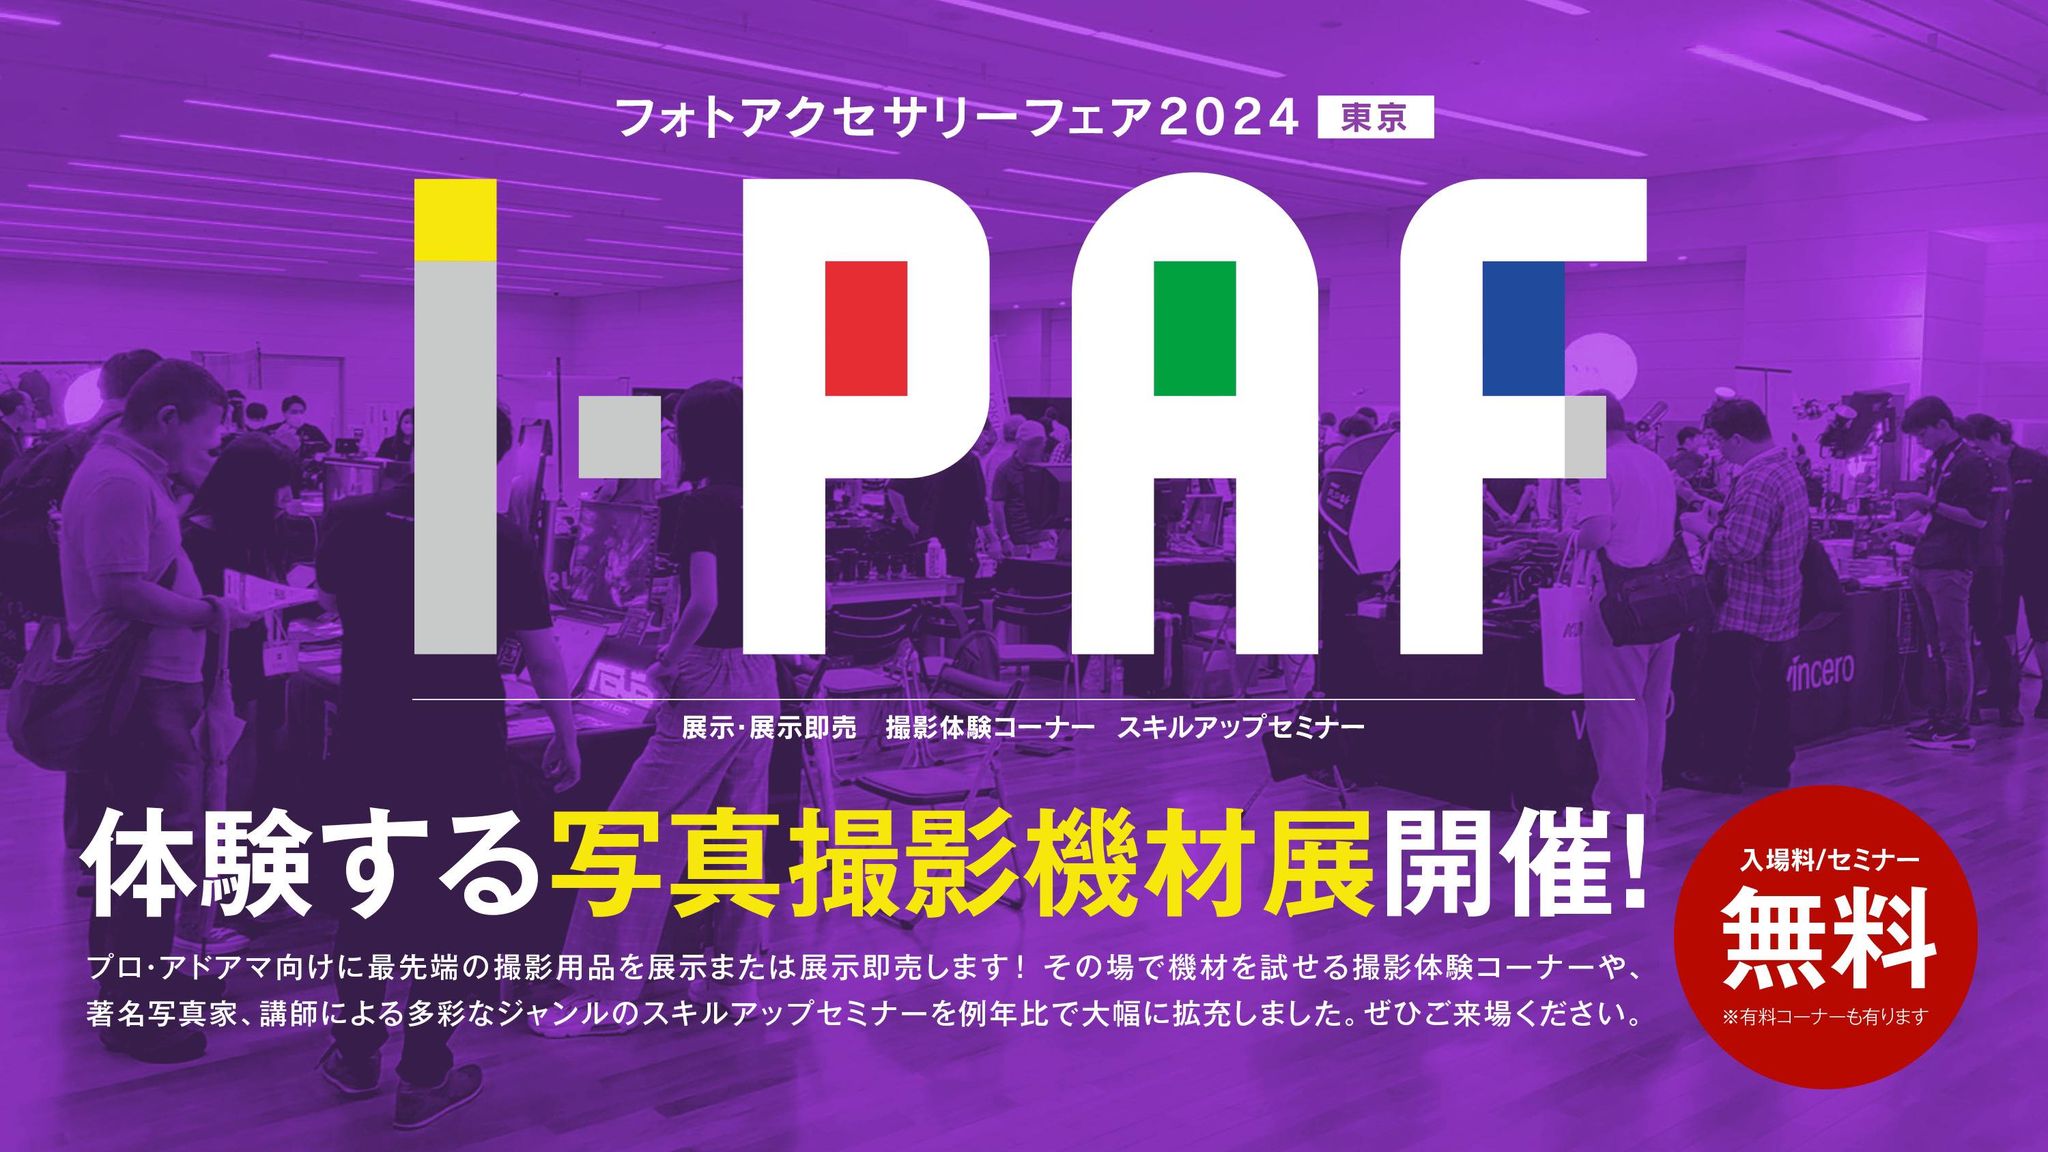 フォトアクセサリーフェア 2024 I-PAF：E&Iクリエイション出展のお知らせ